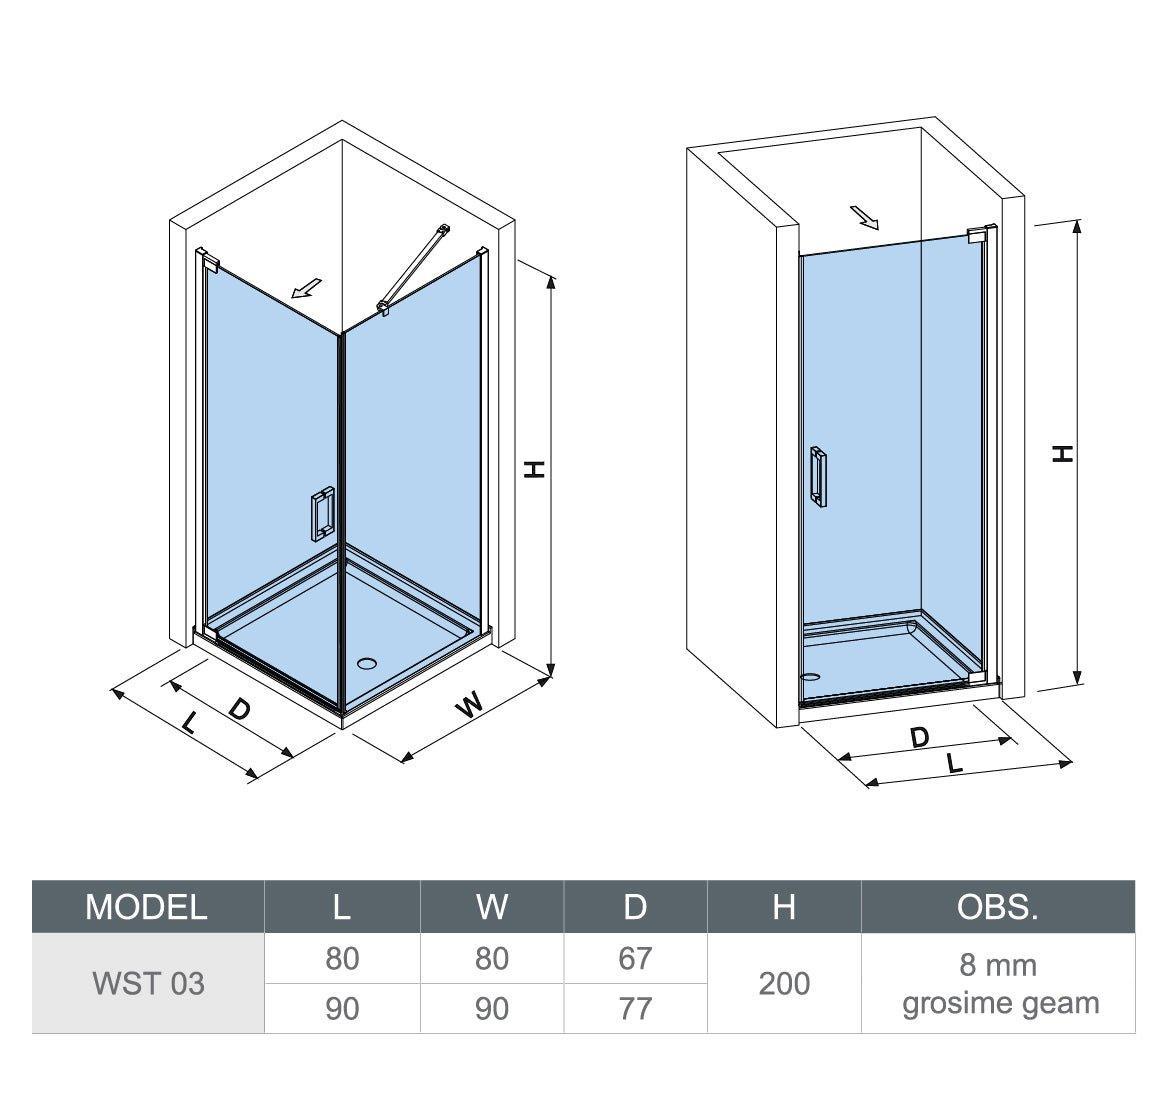 Cabină de duș pătrată Relax, profil cromat, sticlă transparentă, 8MM - Kabine.ro - Cabina de dus